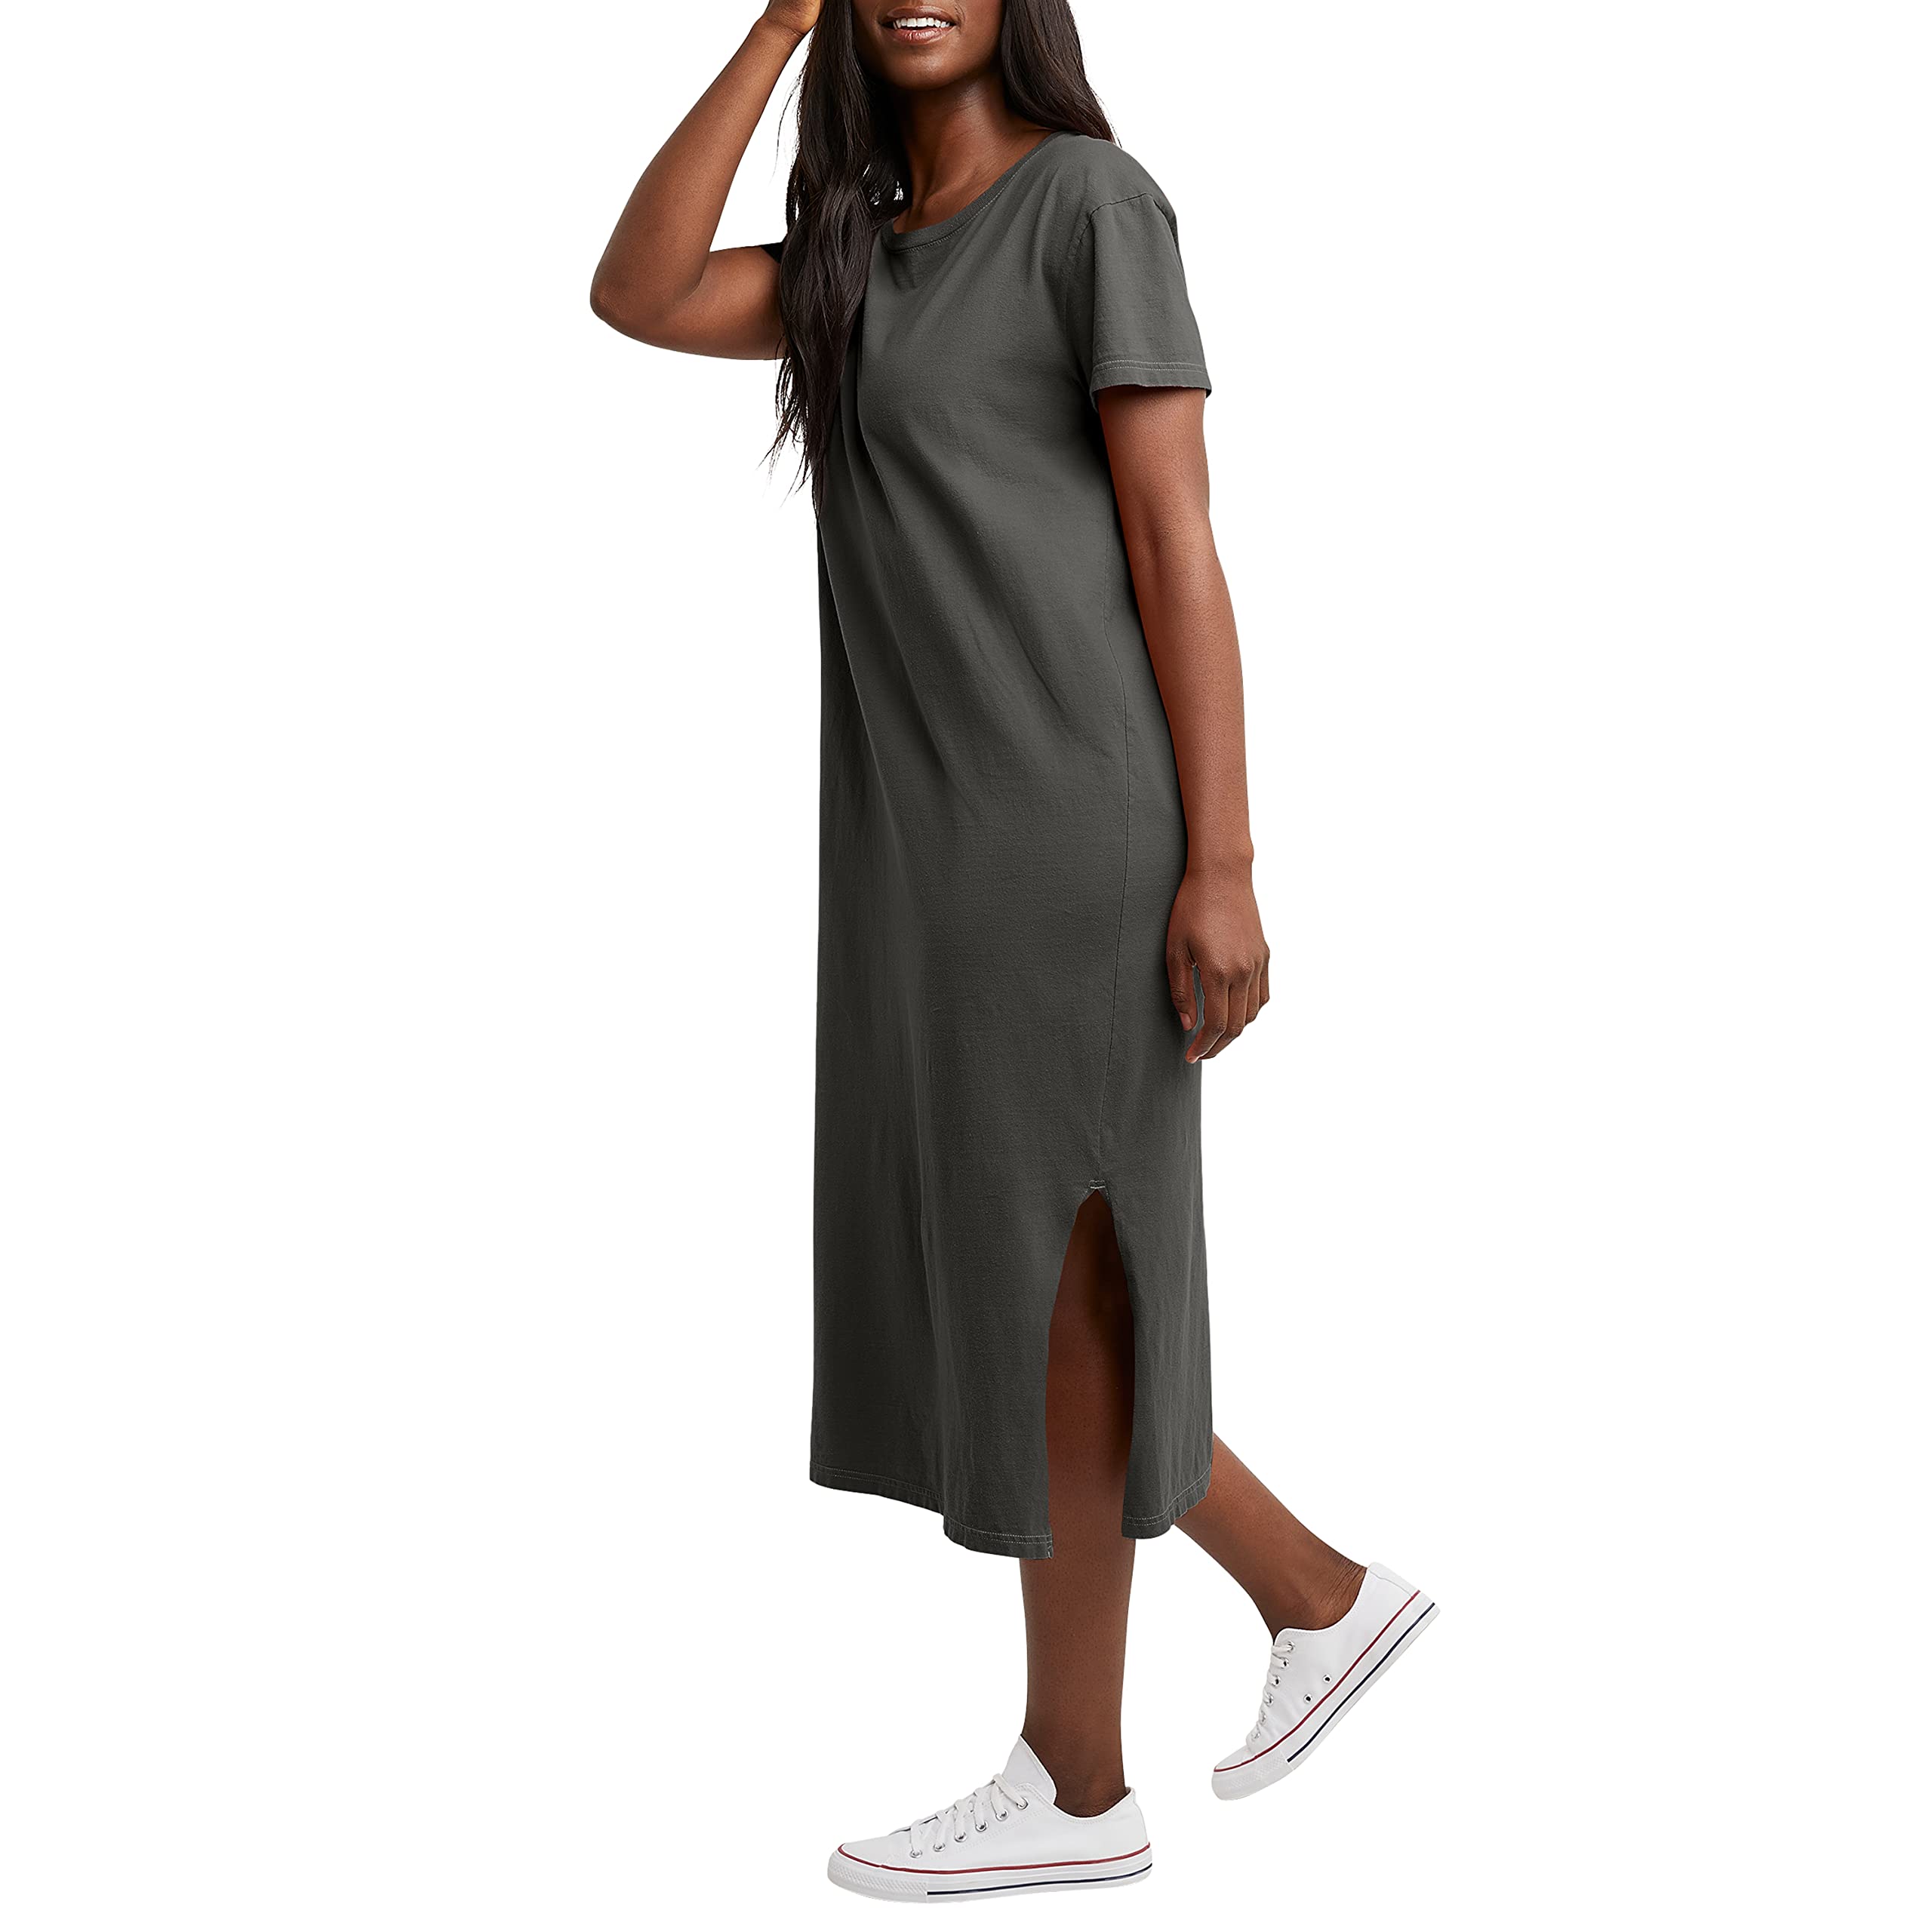 Hanes Originals Women's Garment Dyed Midi Dress, 100% Cotton Vintage Wash Ankle-Length Dress